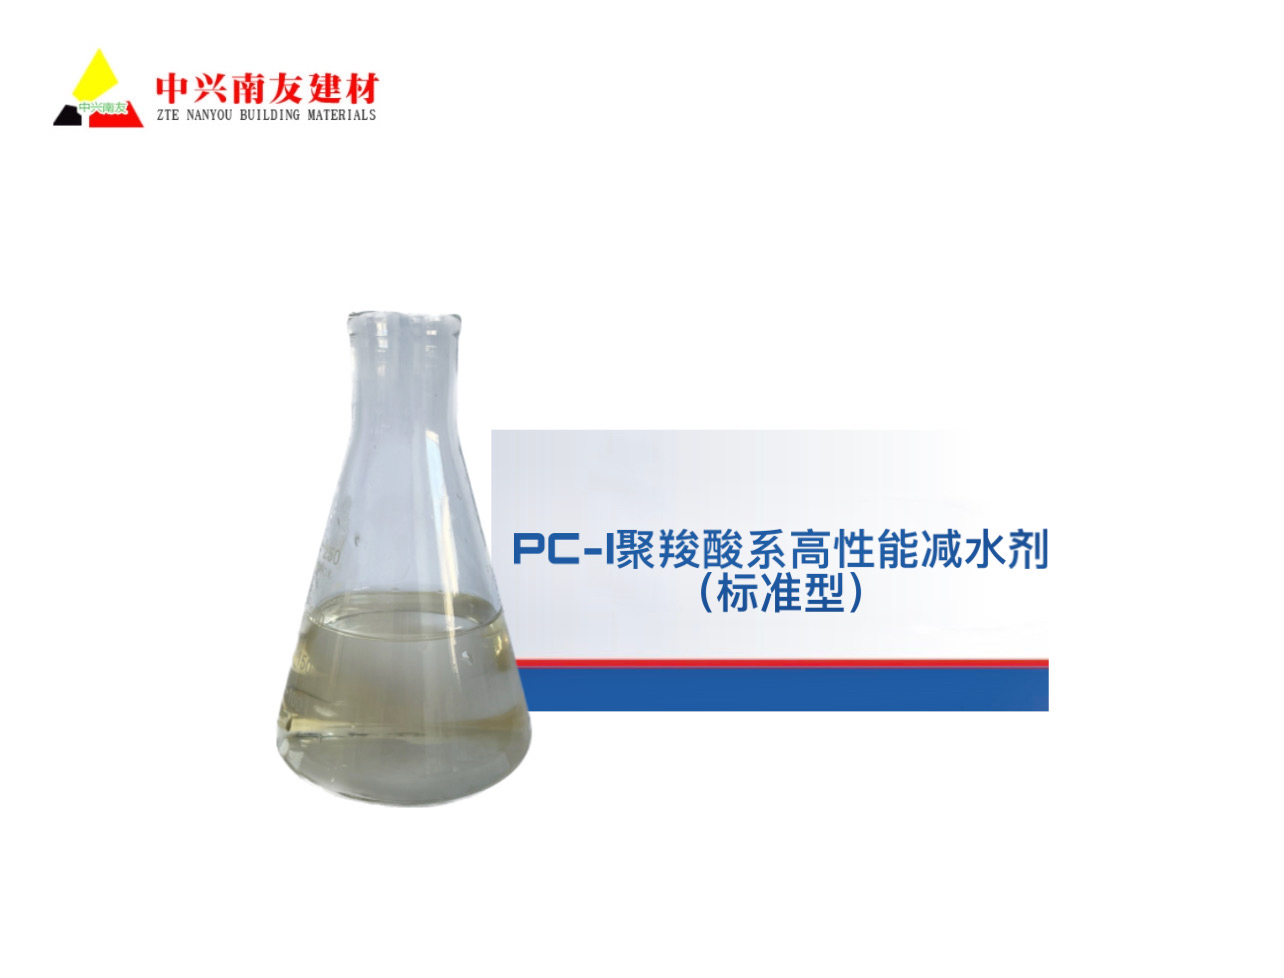 PC-I聚羧酸系高性能减水剂（标准型）